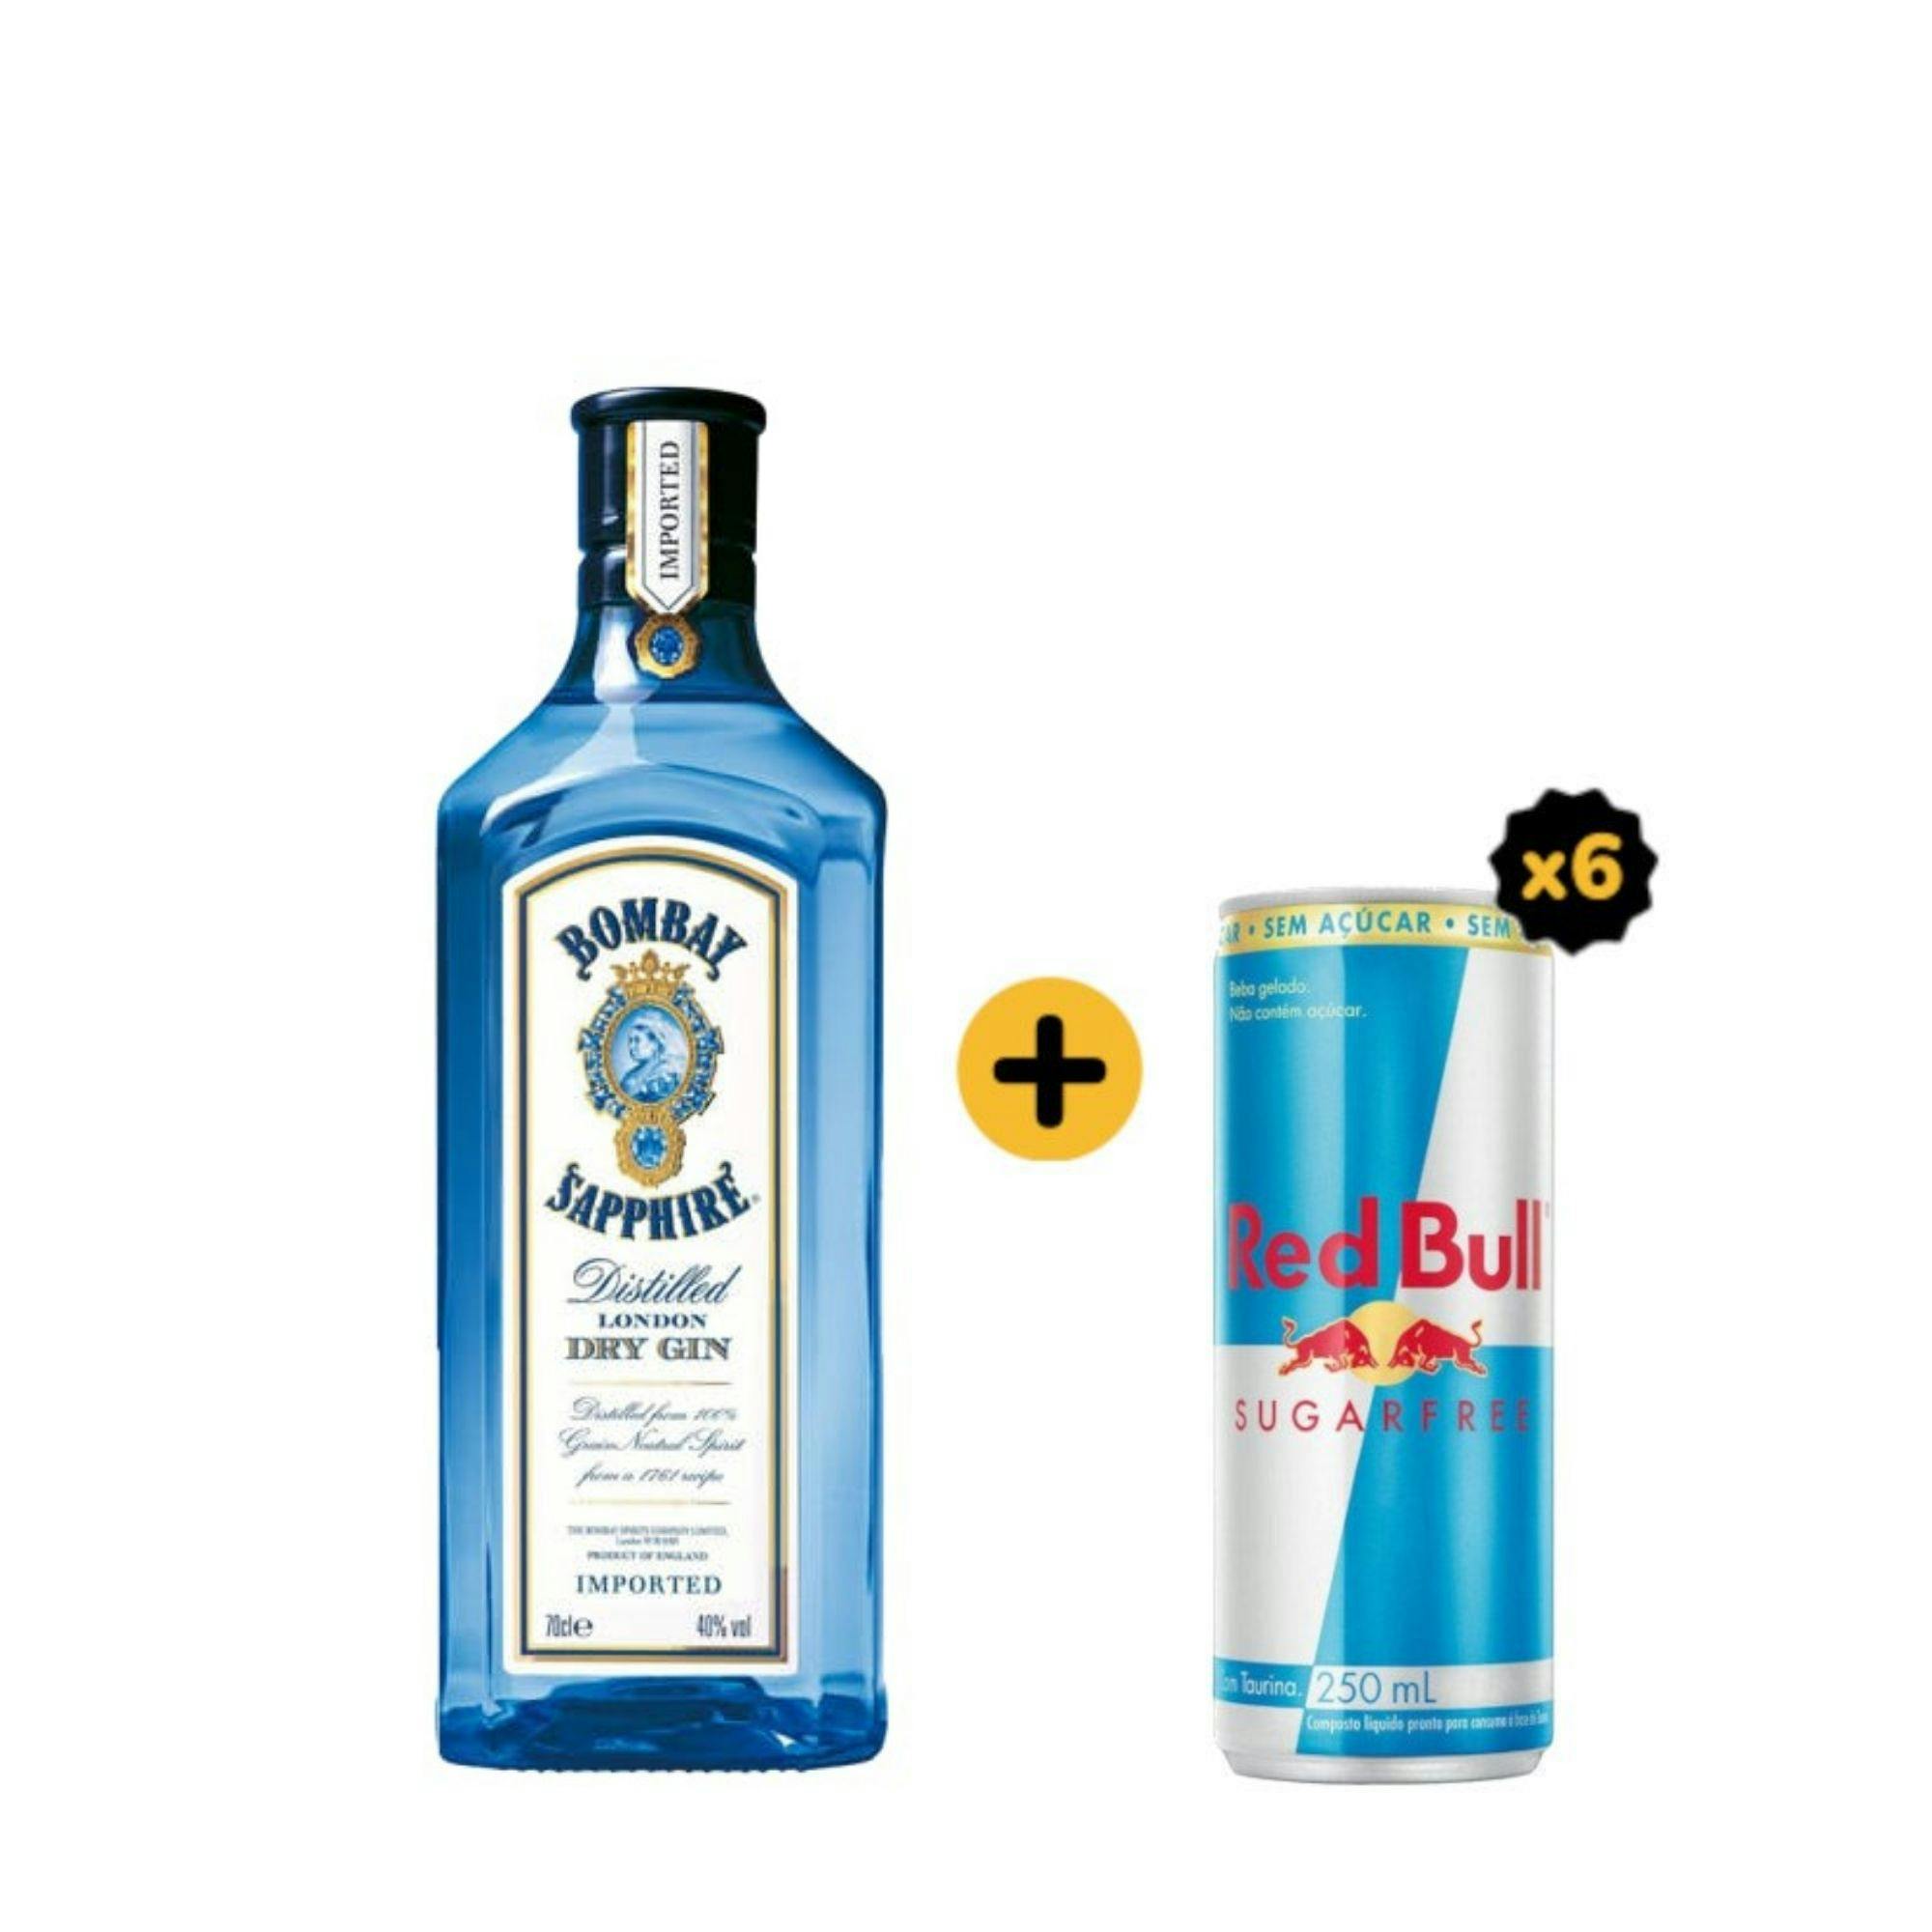 Combo Bombay + Red Bull (1 Gin Bombay Sapphire 750ml + 6 Red Bull Sugarfree 250ml)